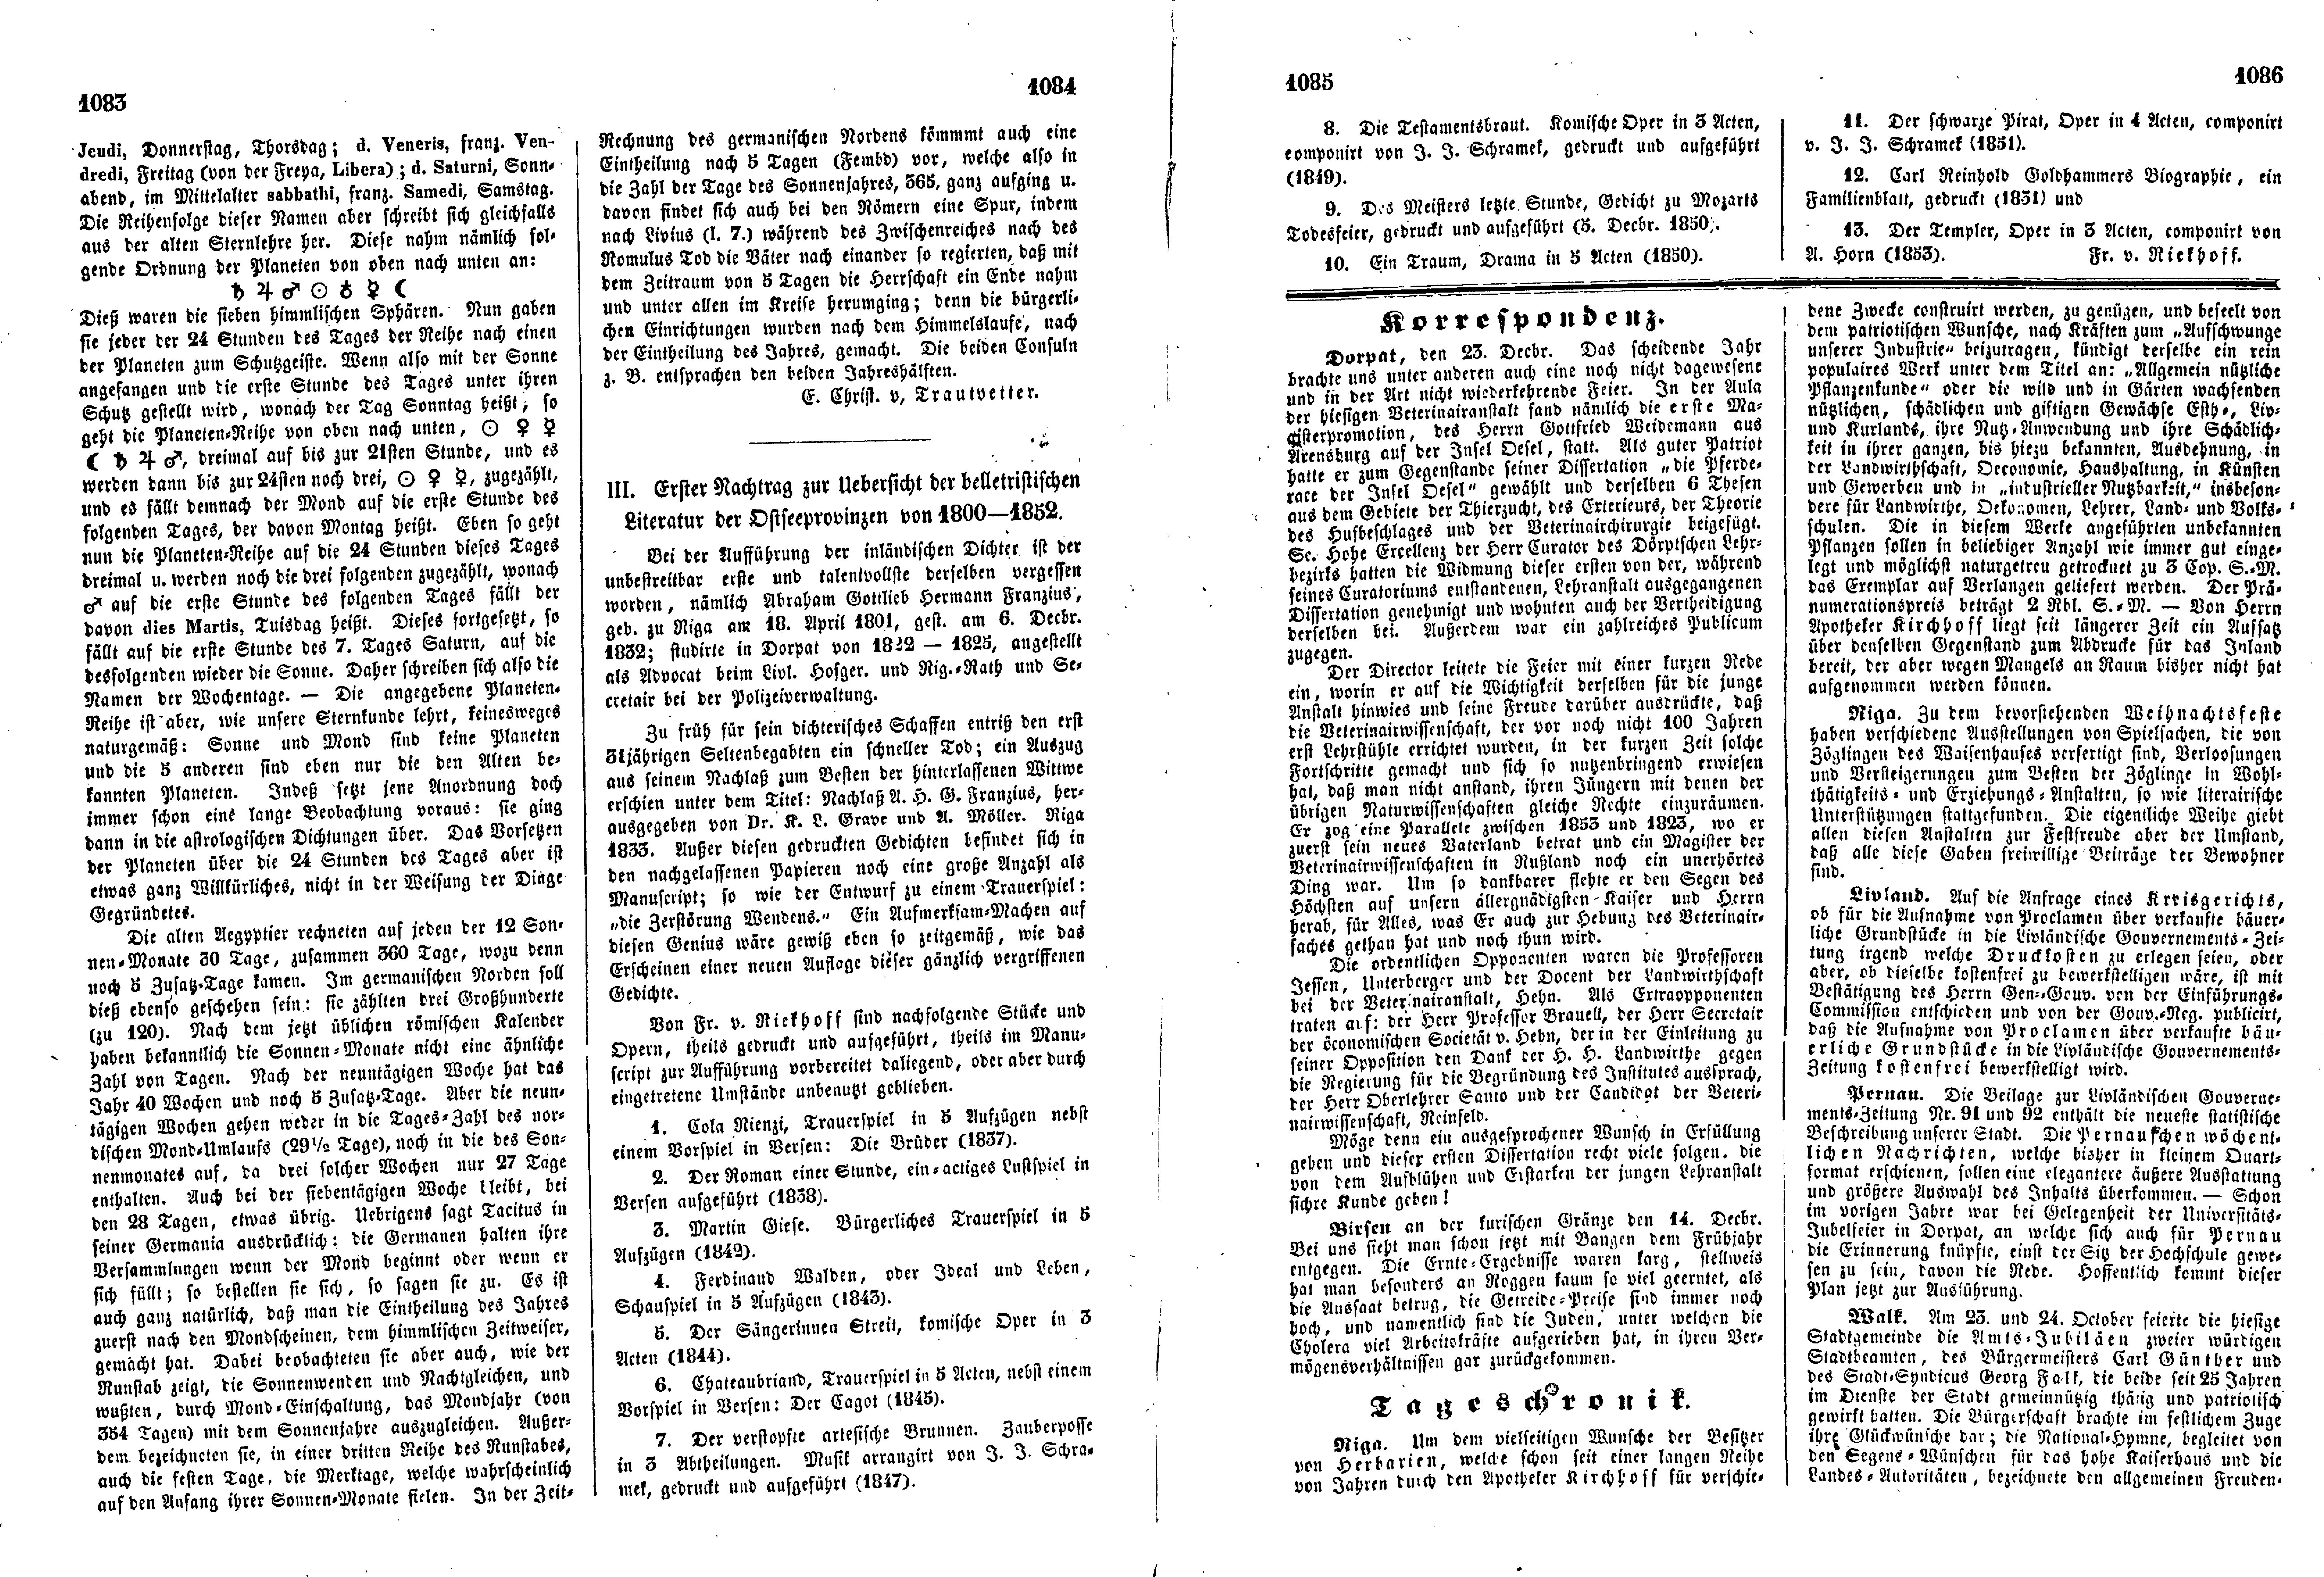 Erster Nachtrag zur Uebersicht der belletristischen Literatur der Ostseeprovinzen von 1800-1852 (1853) | 1. (1083-1086) Main body of text